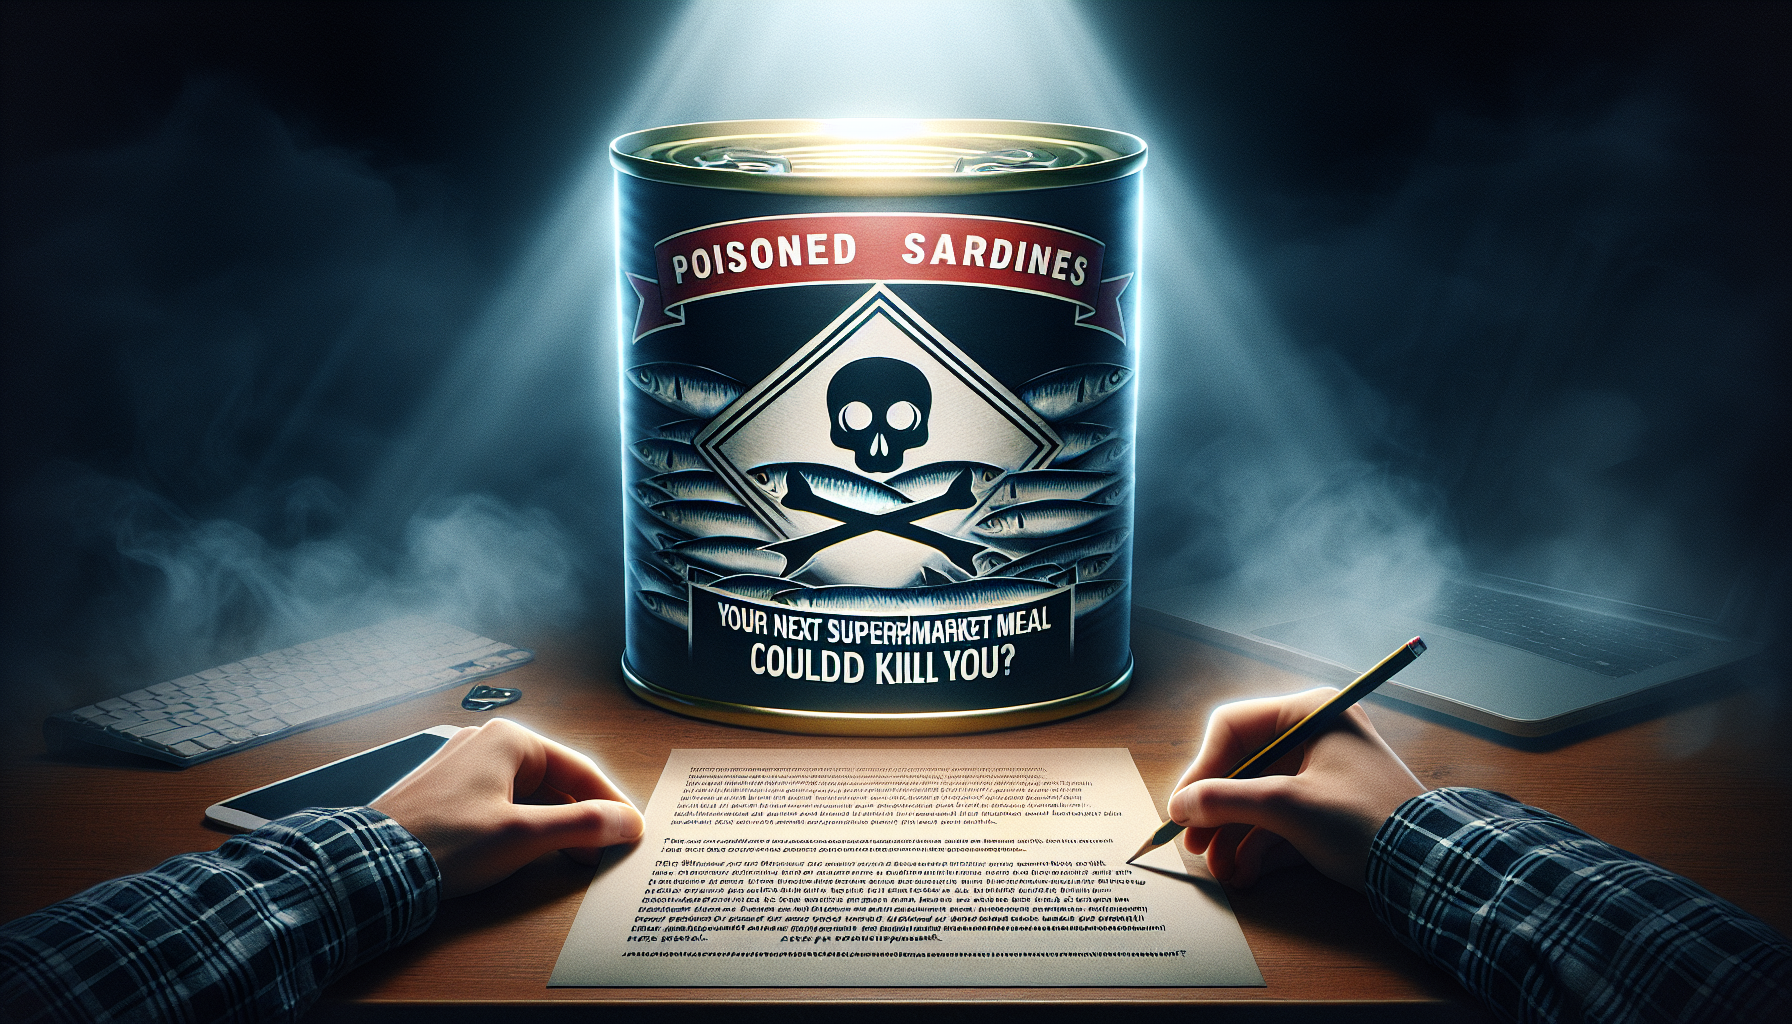 découvrez l'alerte : des sardines en boîte potentiellement empoisonnées pourraient mettre en danger votre prochain repas au supermarché. informez-vous pour éviter tout danger.